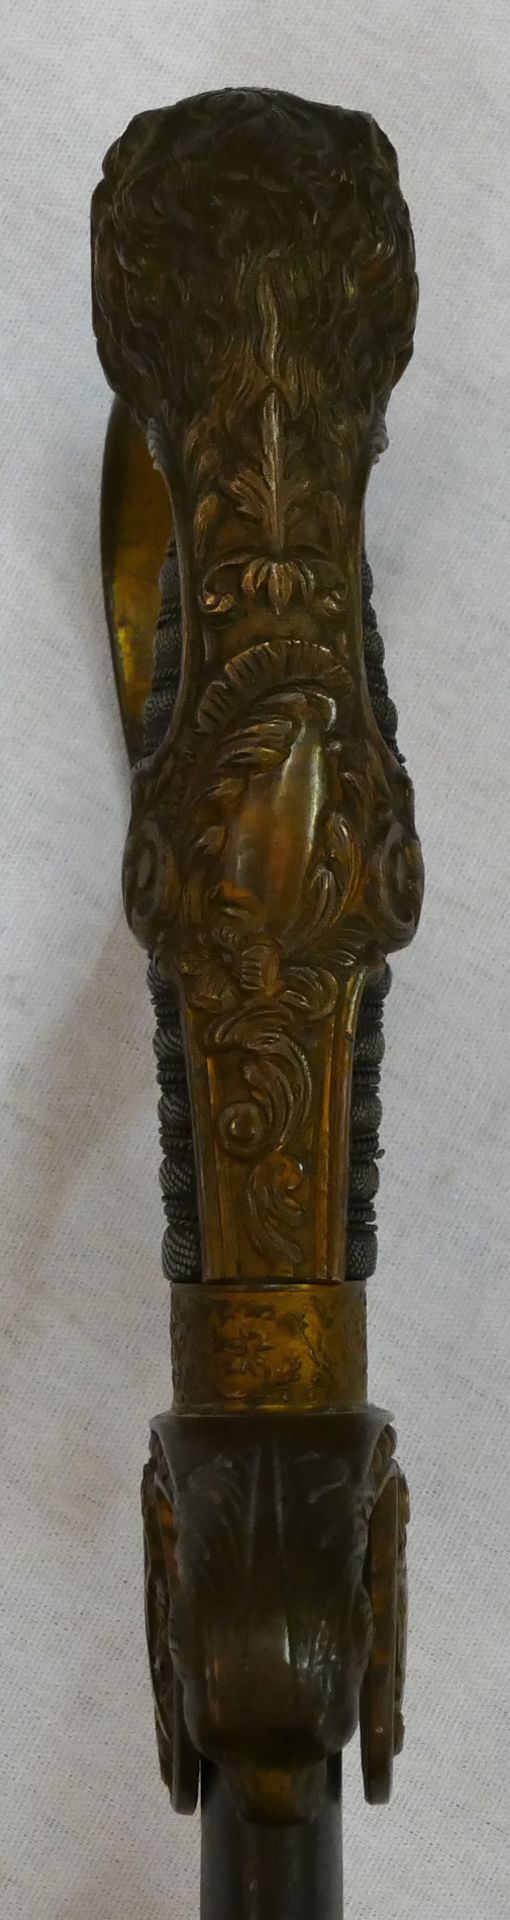 1 Löwenkopfsäbel wohl 19. Jh. Messinggriff mit Eichenlaubdekor, Fischhautgriff mit Drahtwicklung, ca - Image 6 of 6